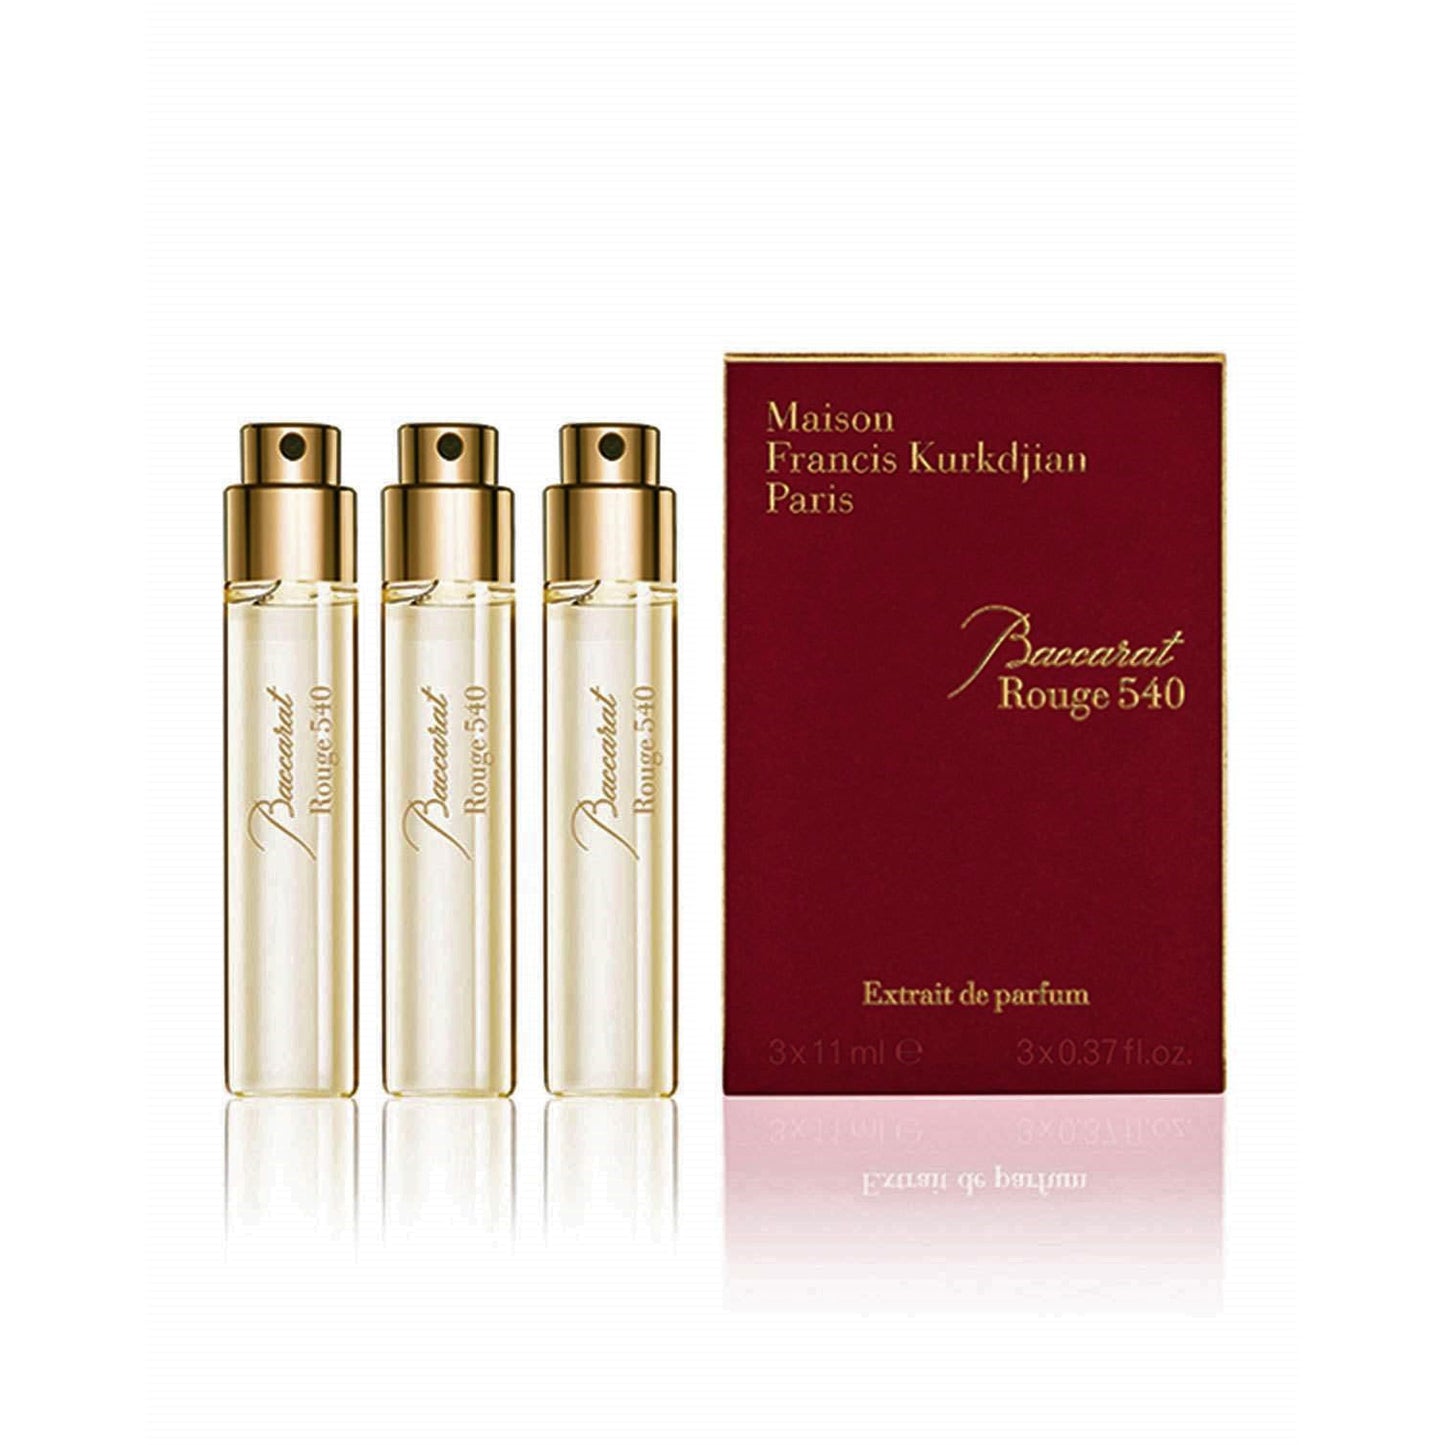 Maison Francis Kurkdjian Baccarat Rouge 540 Extrait de Parfum 3*11 ml